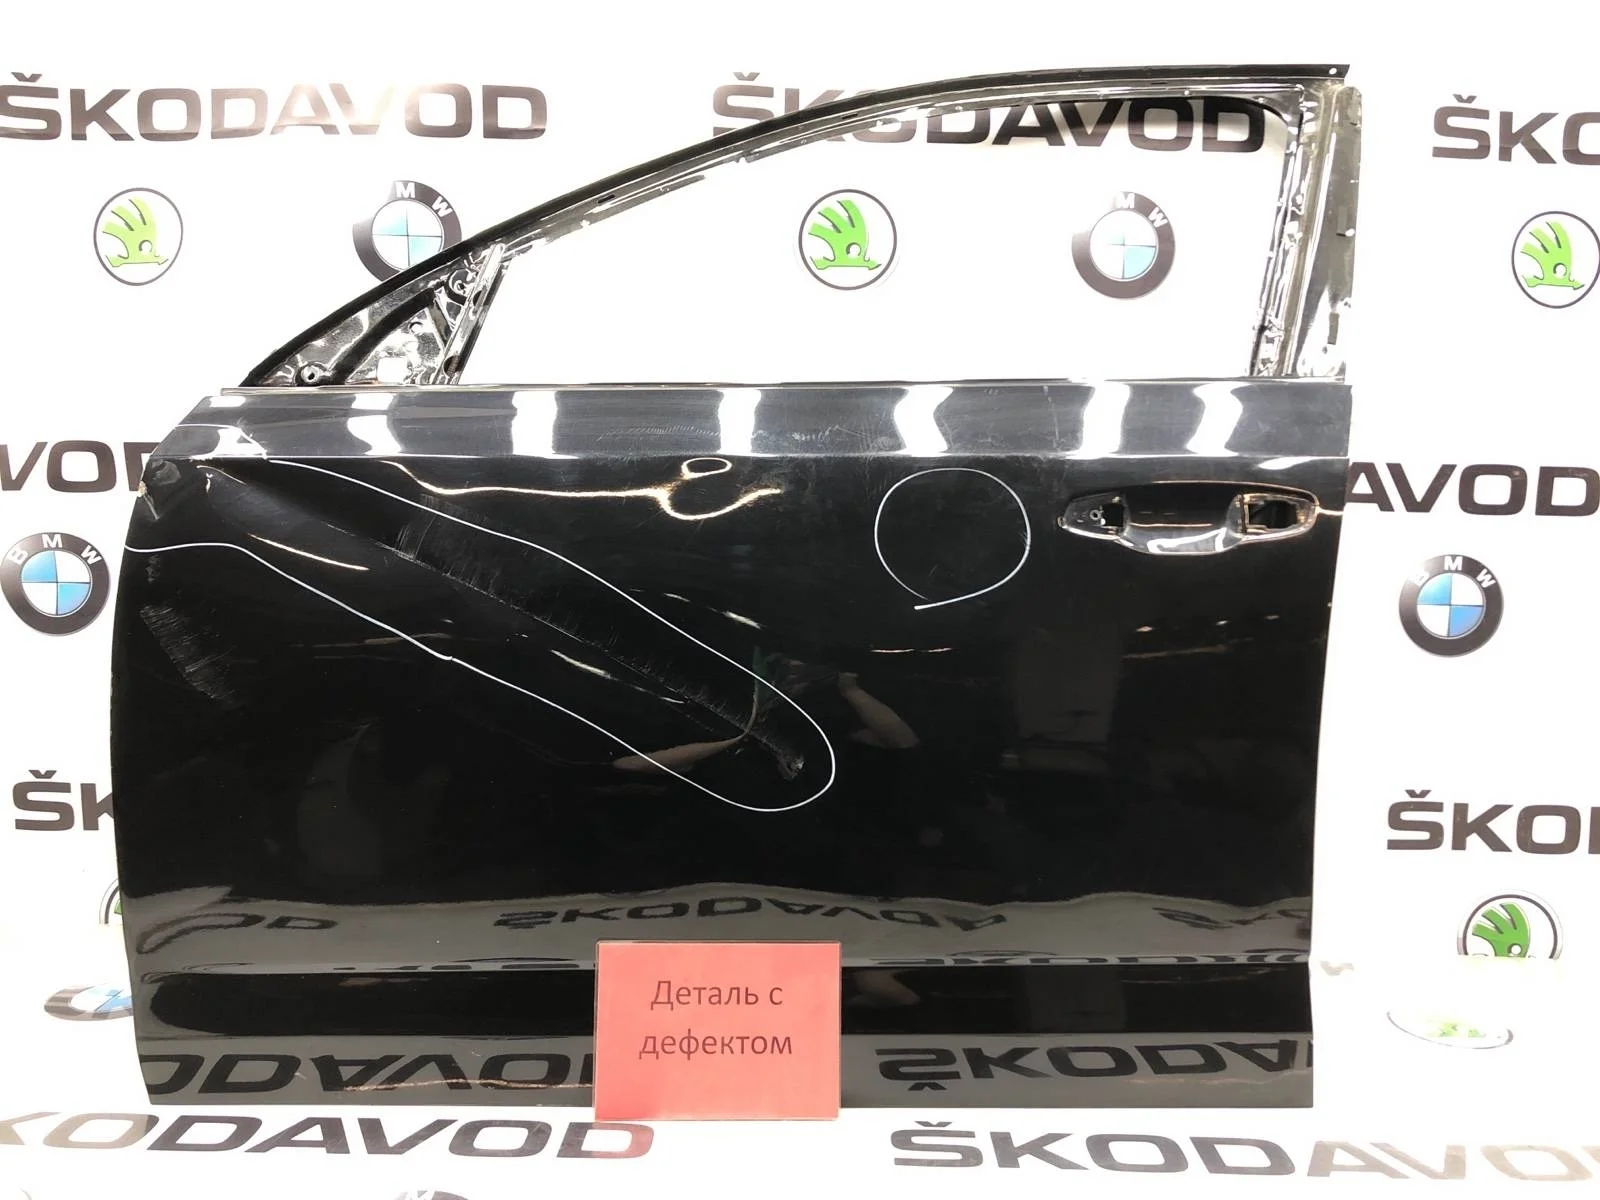 Дверь Skoda Octavia 2017 5EU831051A A7 (5E) 1.6 CWVA, передняя левая